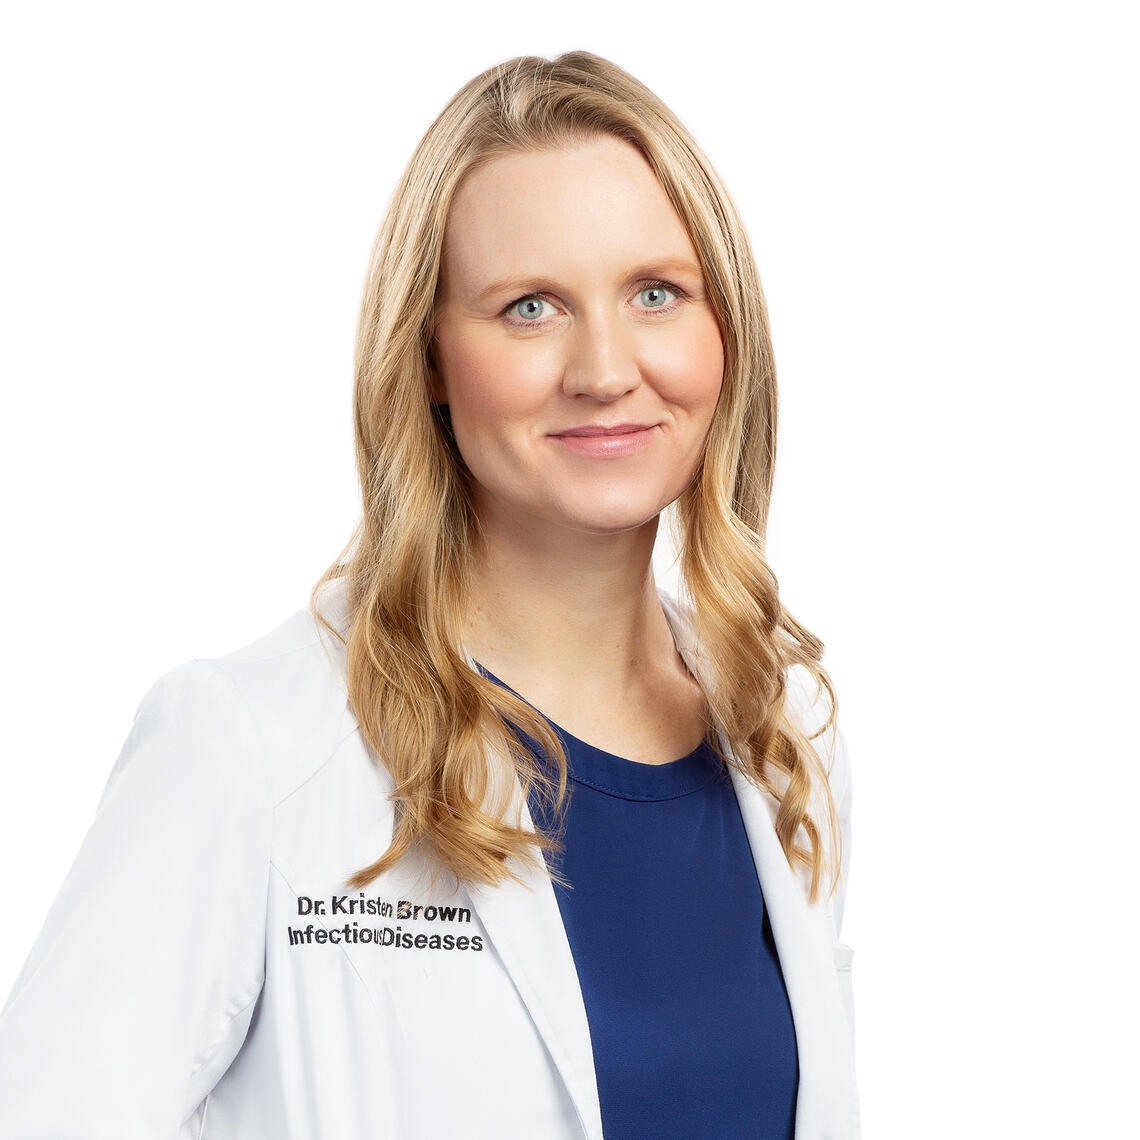 Dr. Kristen Brown